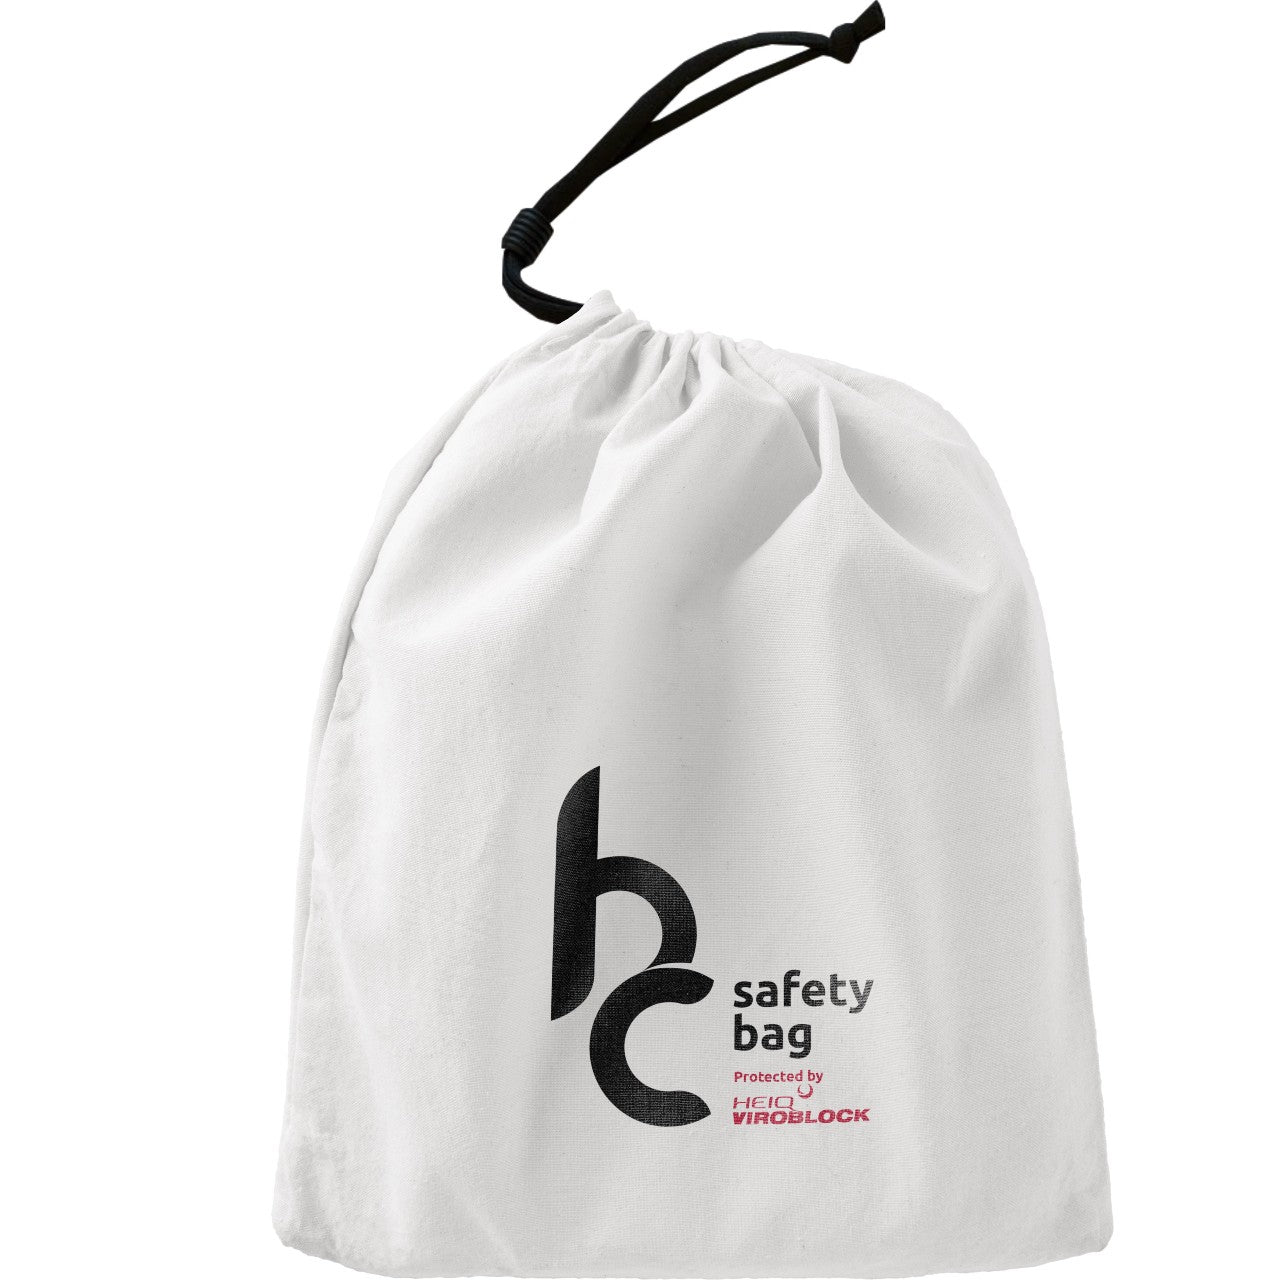 HC Safety-Bag mit HeiQ Viroblock - MyHeiQ Switzerland